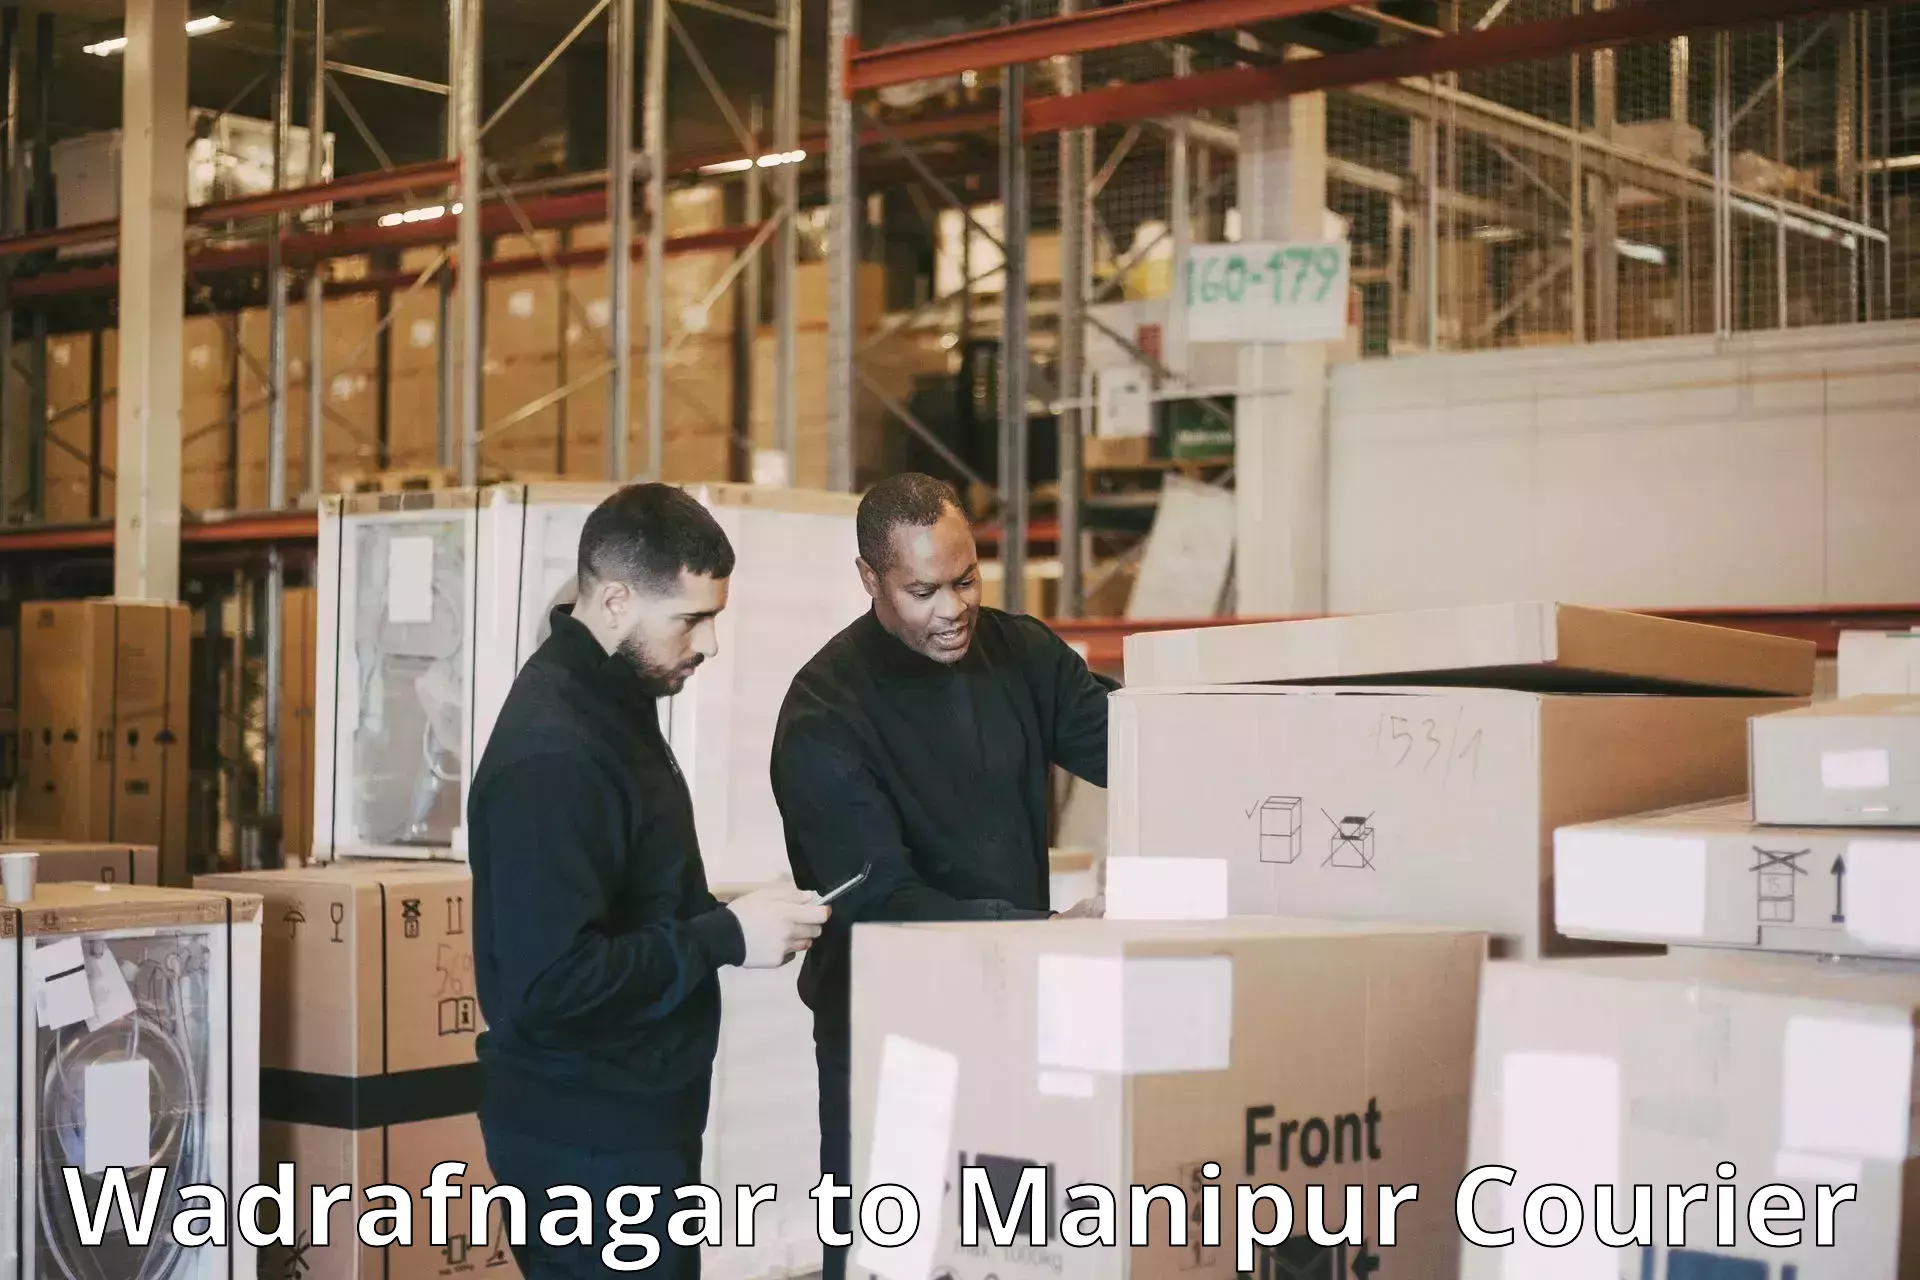 Small parcel delivery Wadrafnagar to Senapati